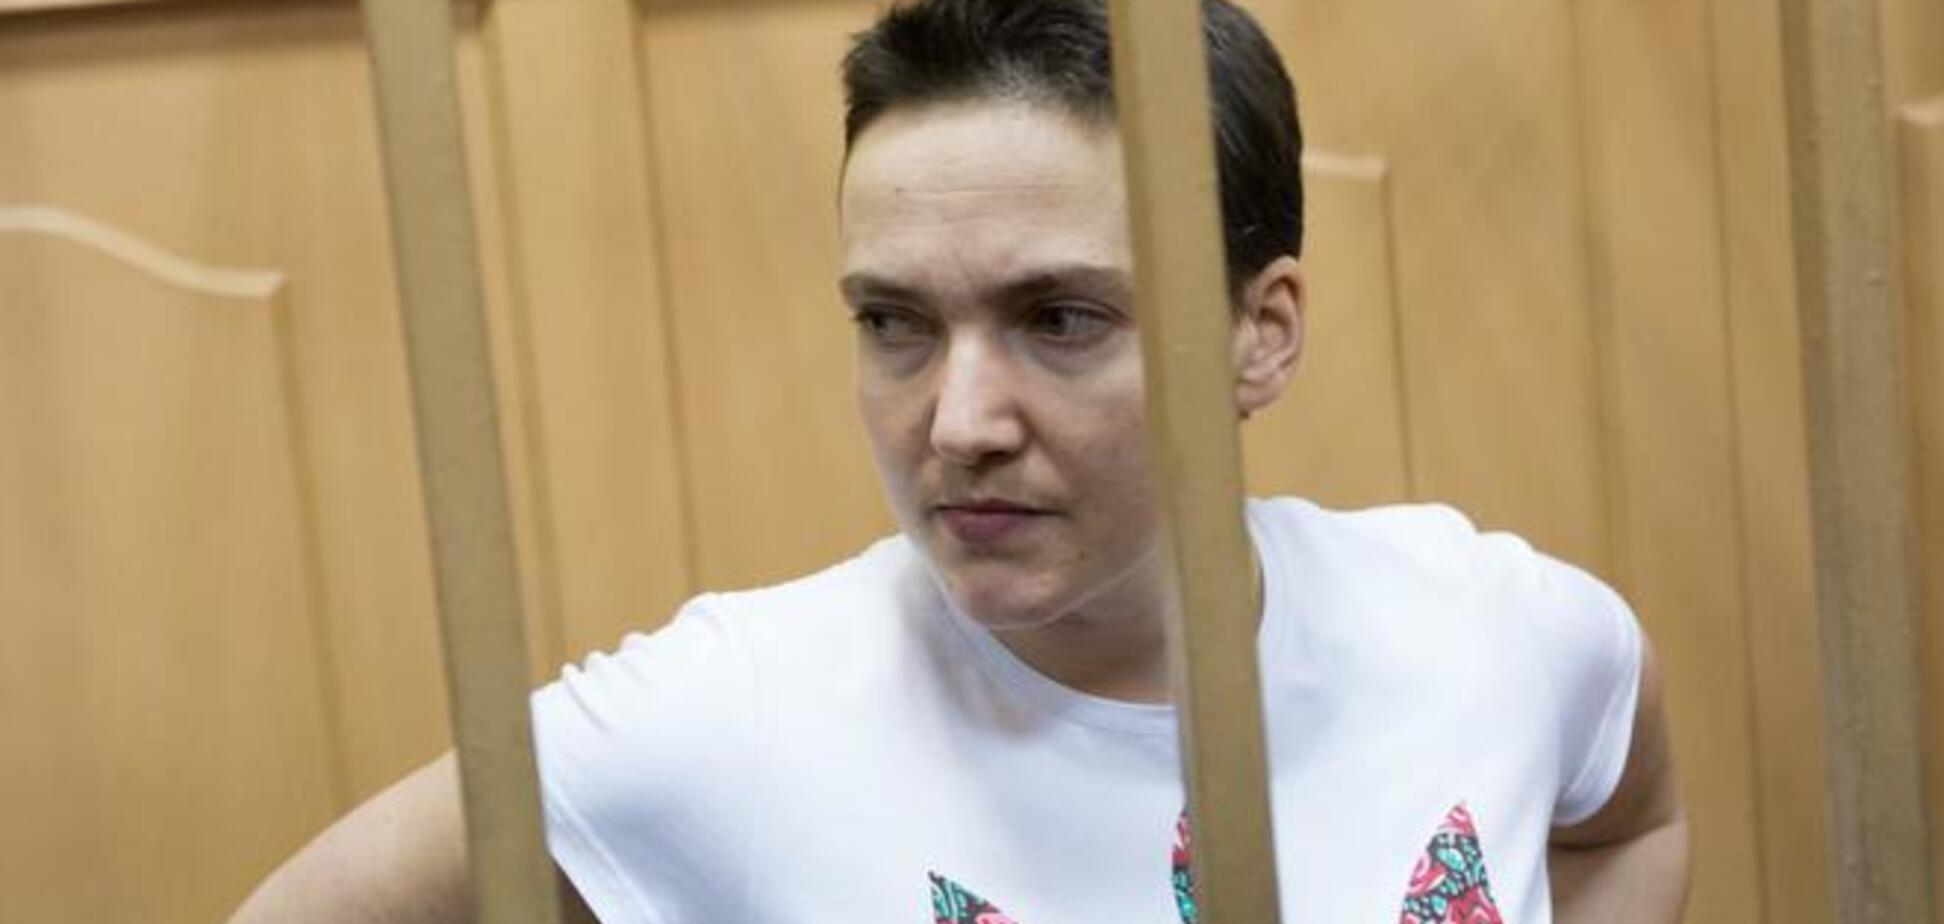 Савченко из-за голодовки потеряла 10 килограмм - адвокат